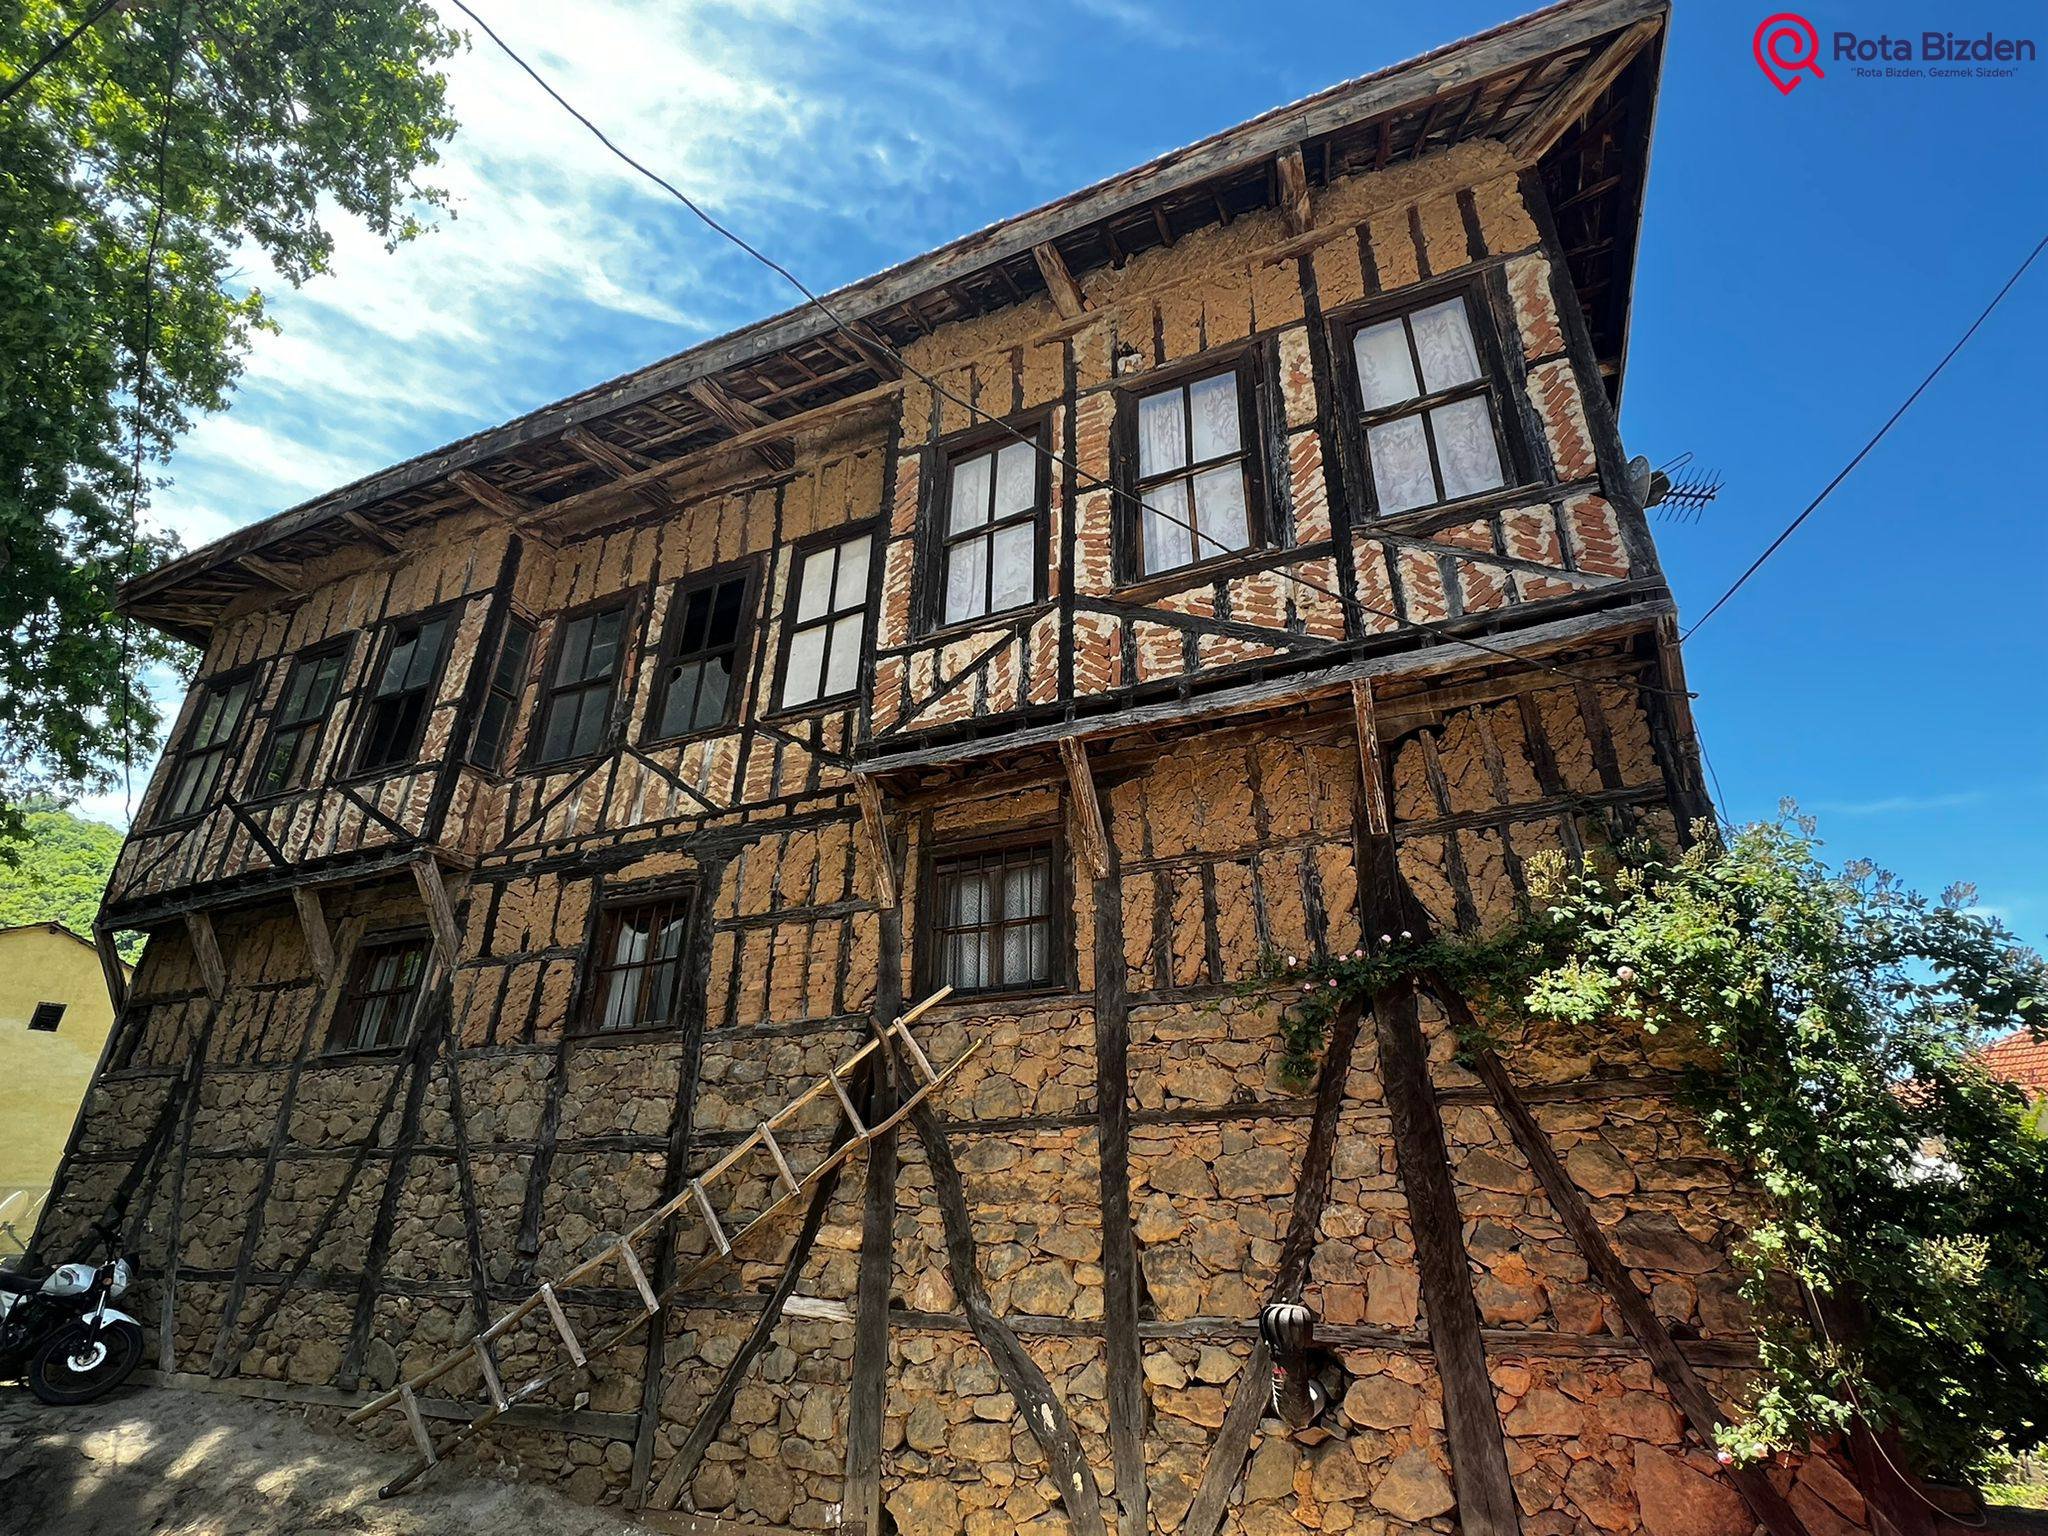 Bursa'da 5 Köy 1 Göl Doğa Yürüyüşü ve Çilek Hasadı Turu